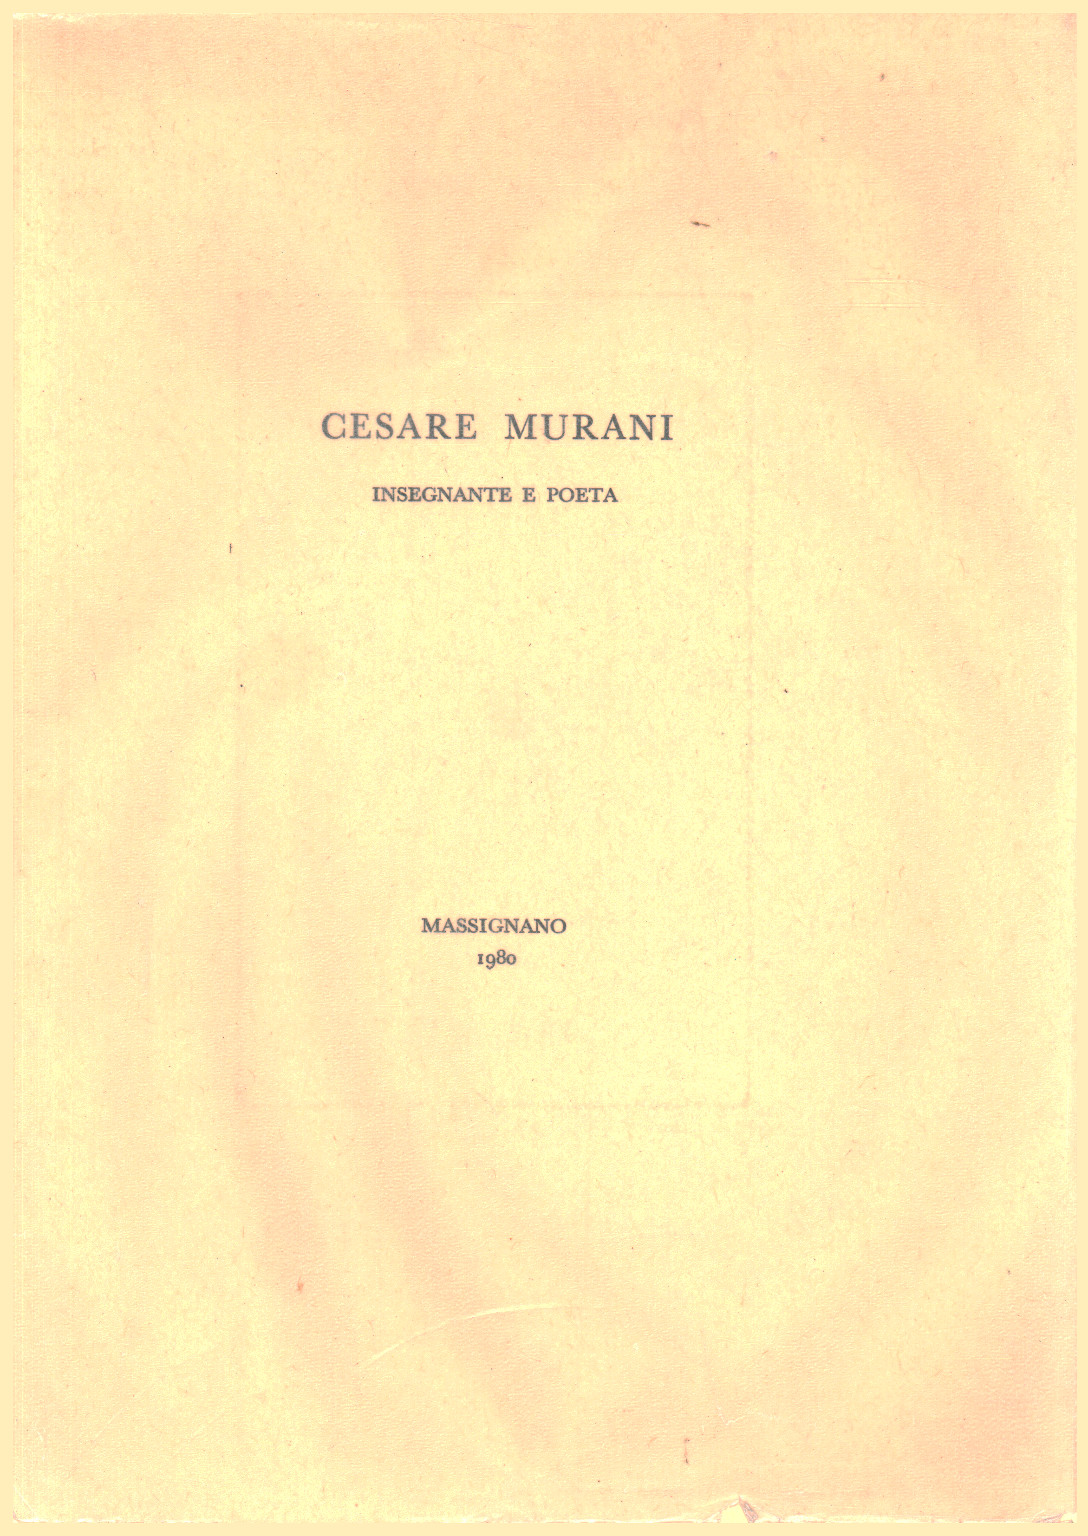 Cesare Murani. Teacher and poet, s.a.